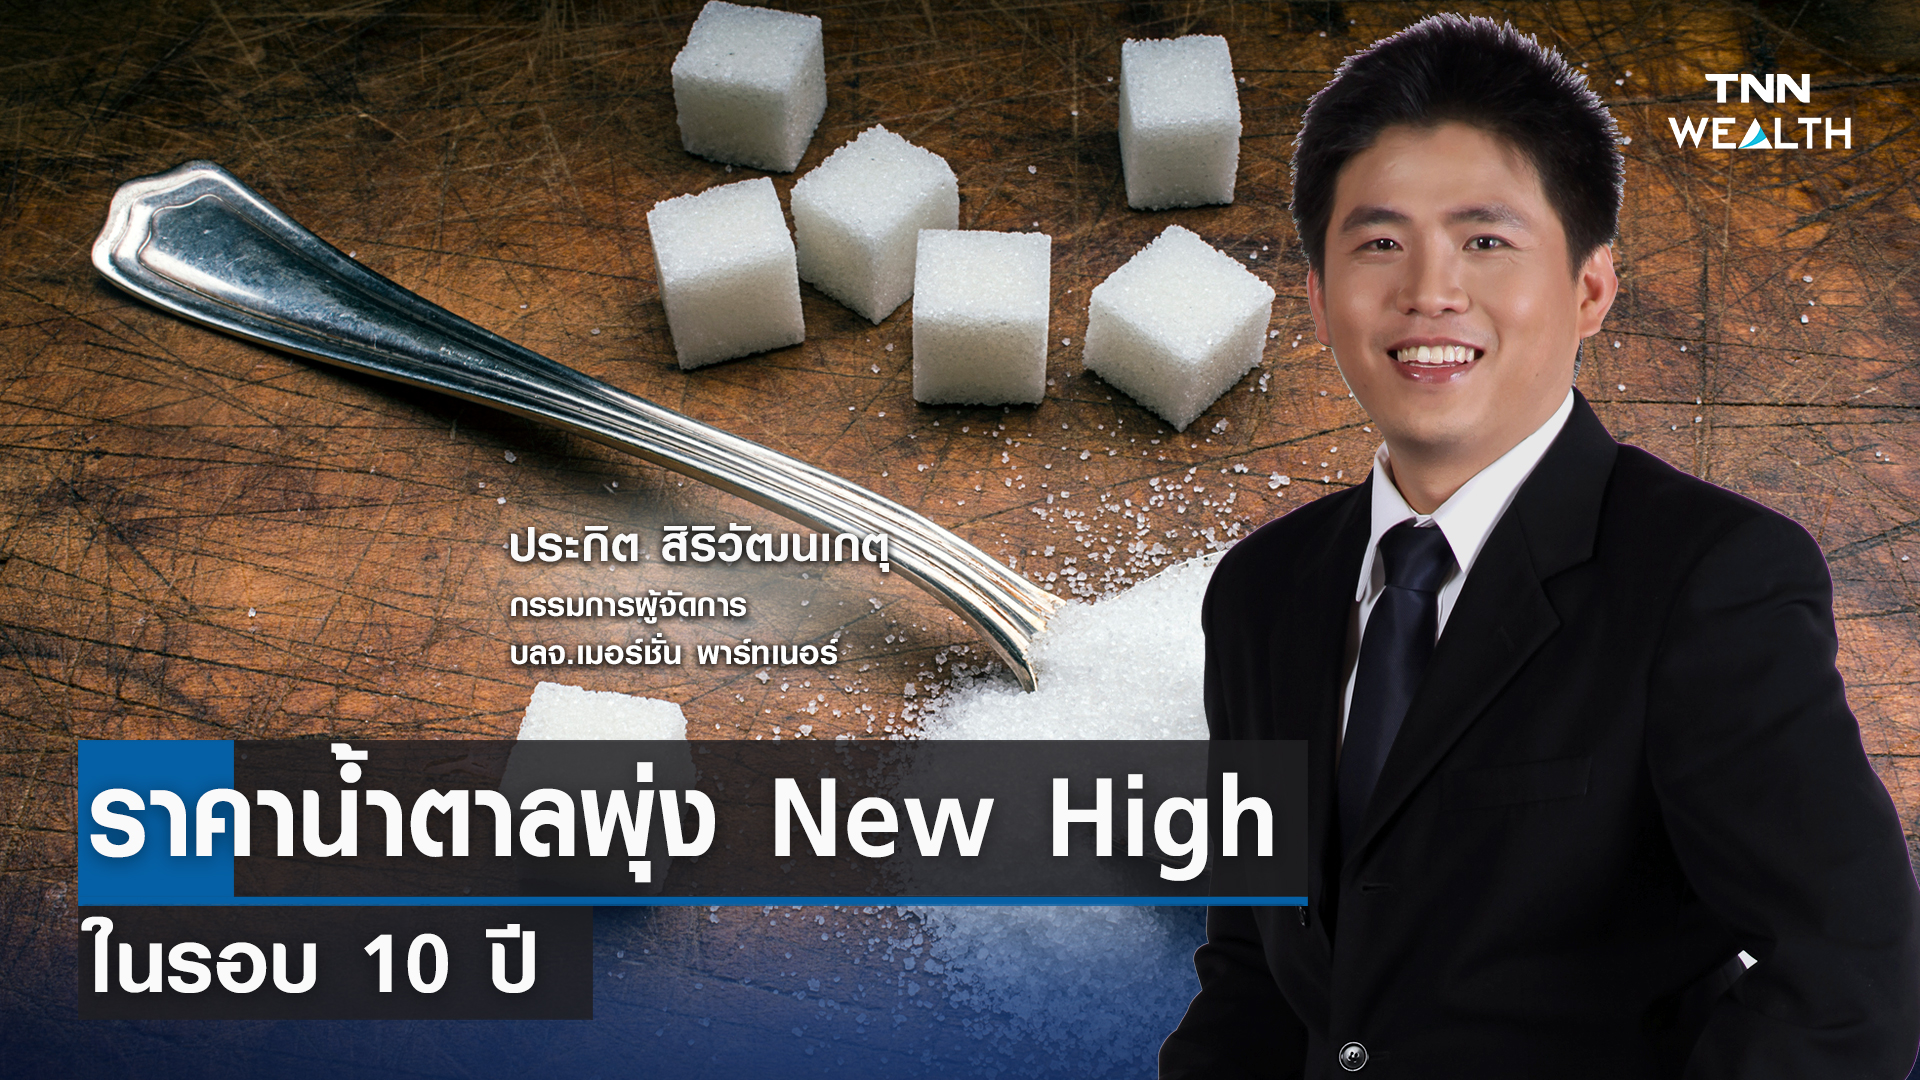 ราคาน้ำตาลพุ่ง New High ในรอบ 10 ปี กับคุณประกิต สิริวัฒนเกตุ l TNN WEALTH 6 ก.ย.66